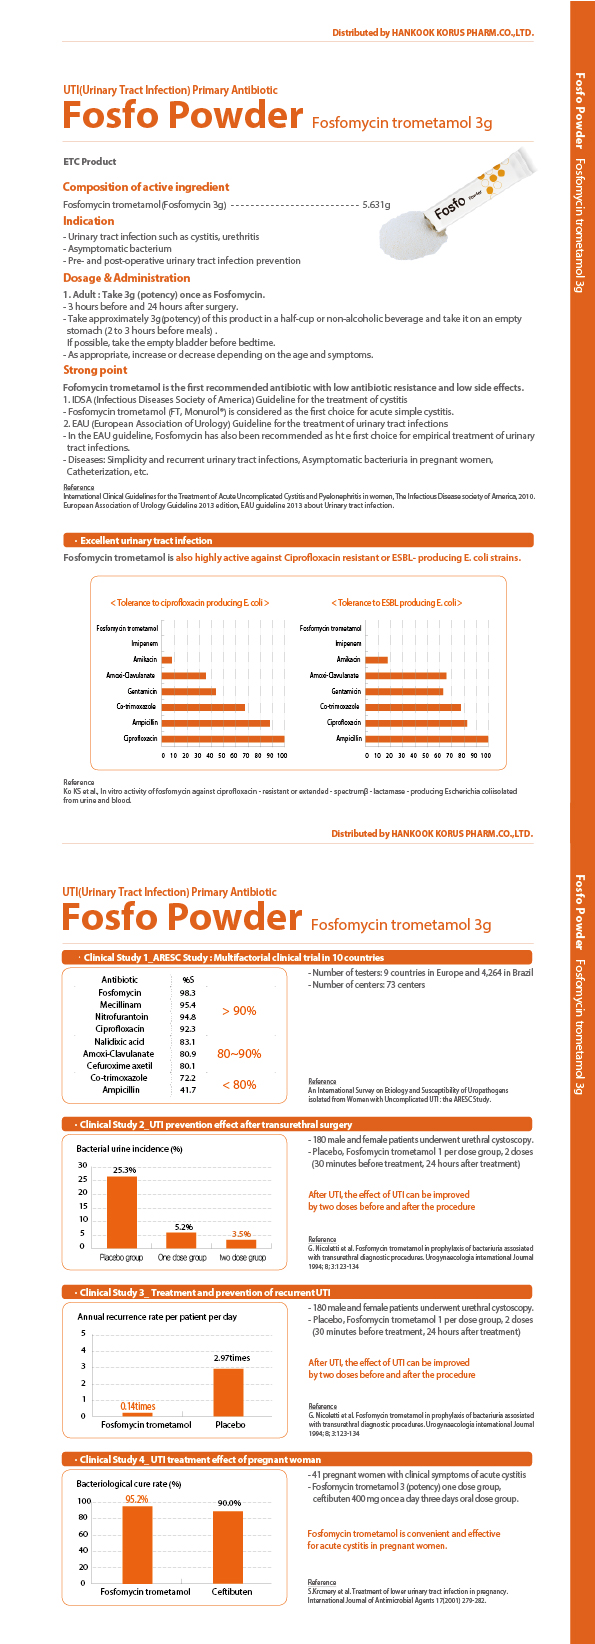 http://www.glrapha.co.kr/userfiles/image/327_Fosfo-Powder(Fosfomycin-trometamol-3g)_03.jpg